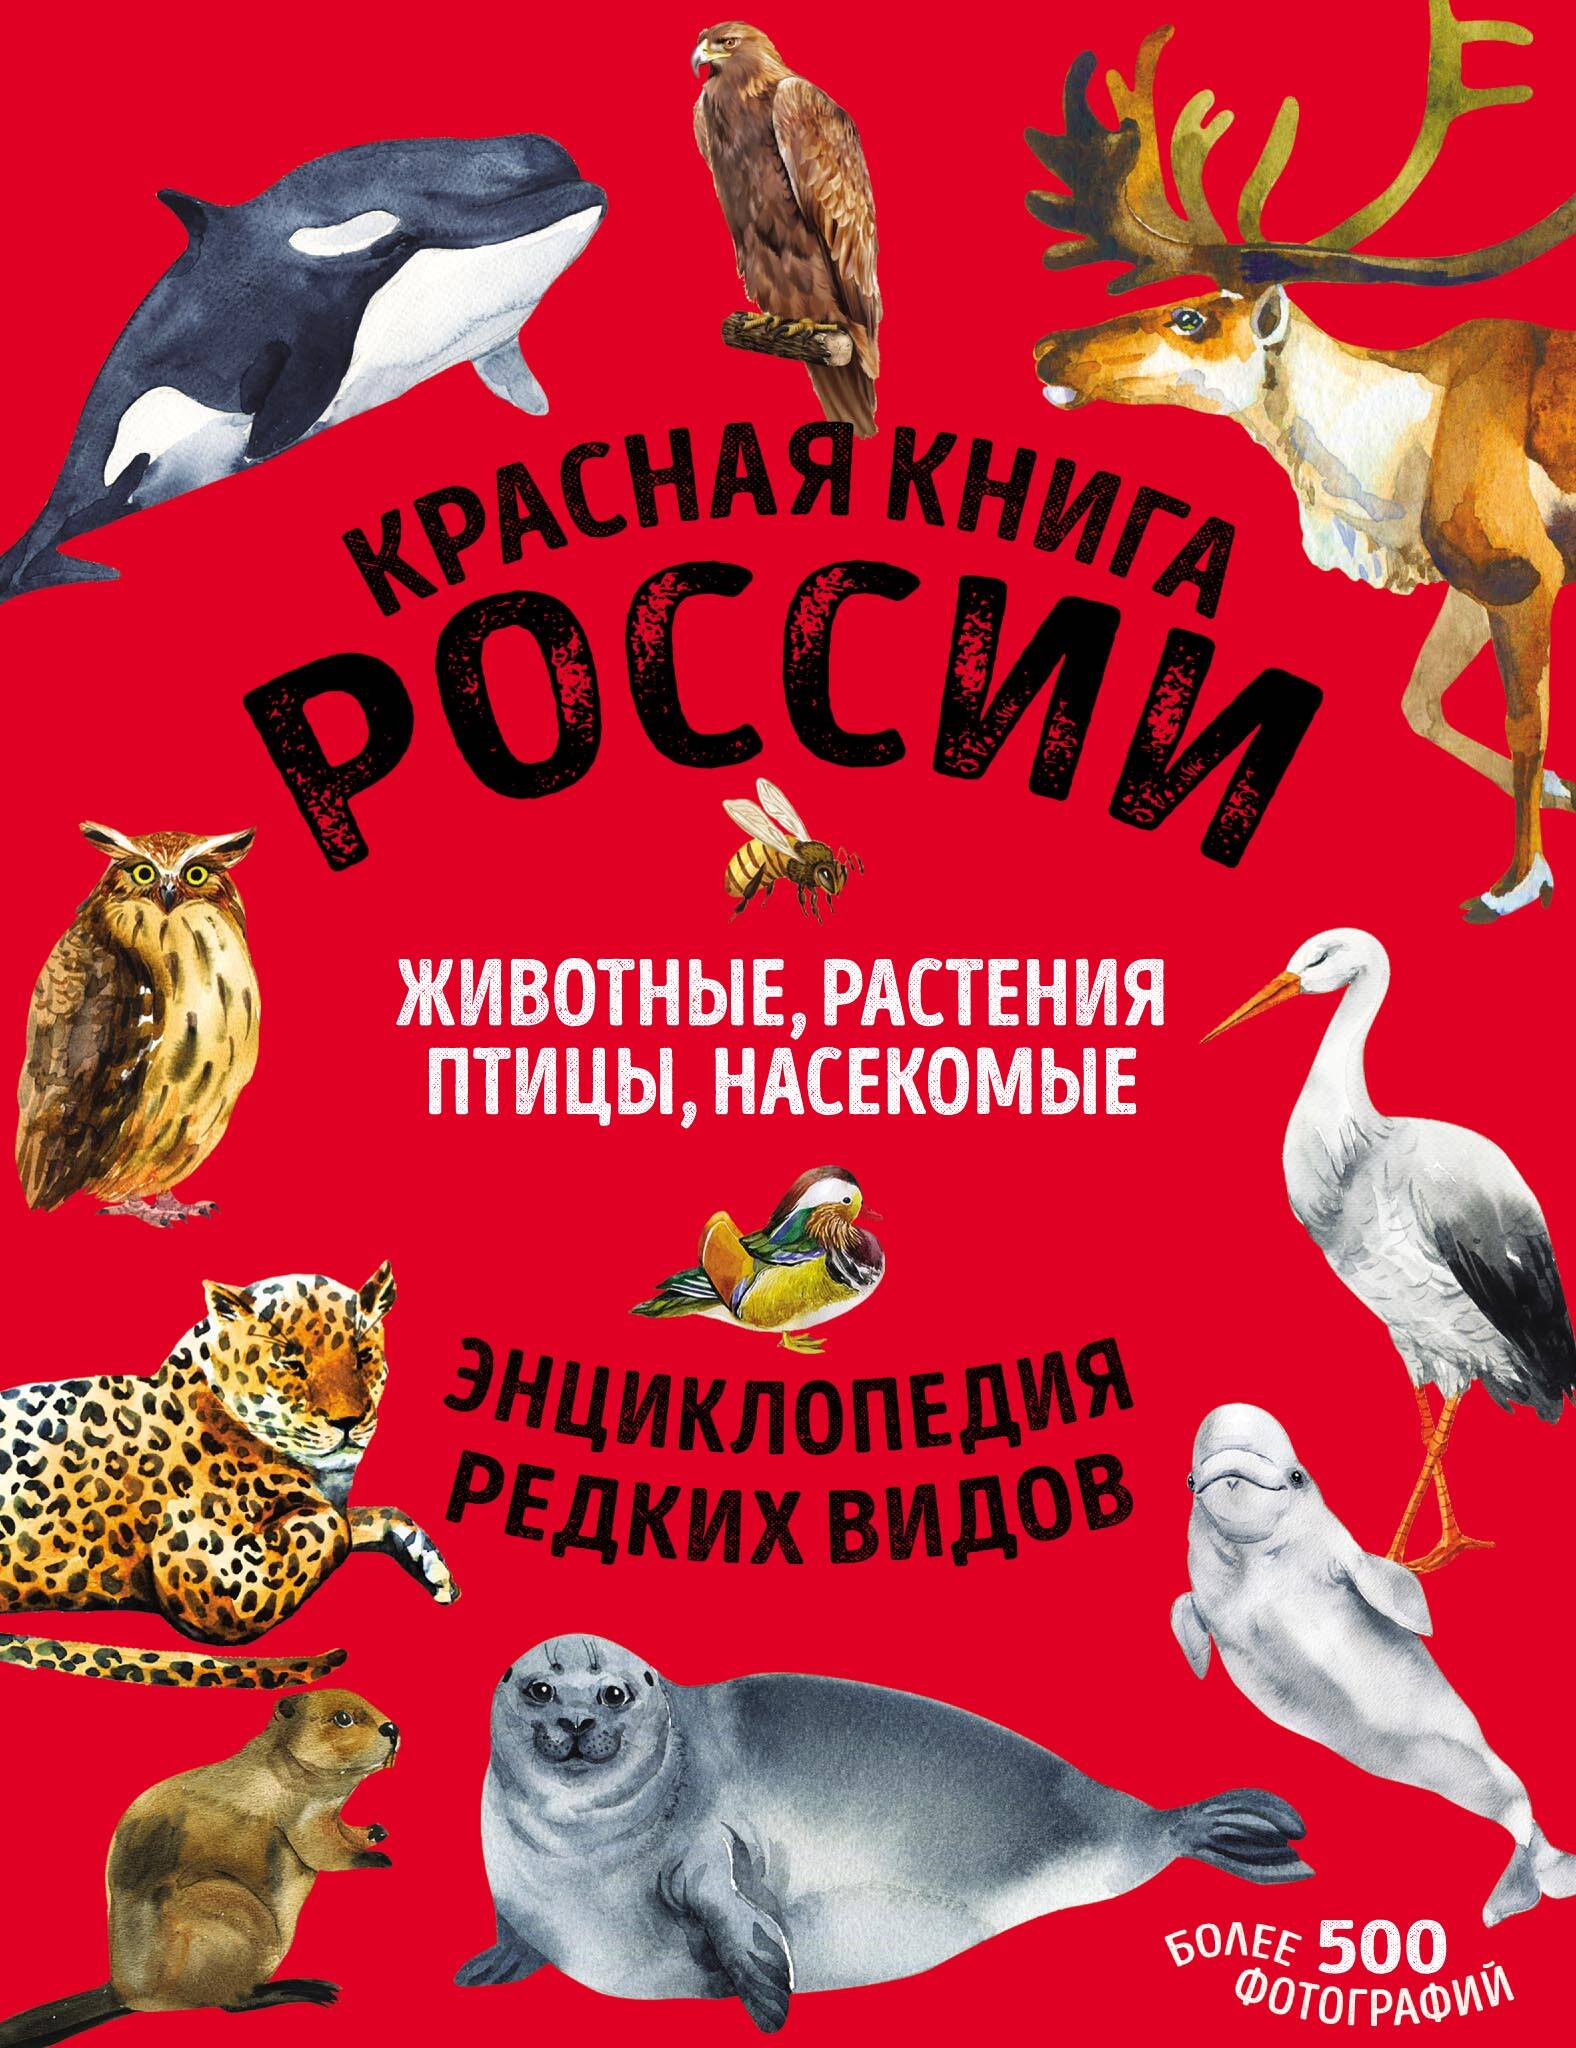 Красная книга России. Млекопитающие, птицы, рептилии, амфибии, рыбы, насекомые